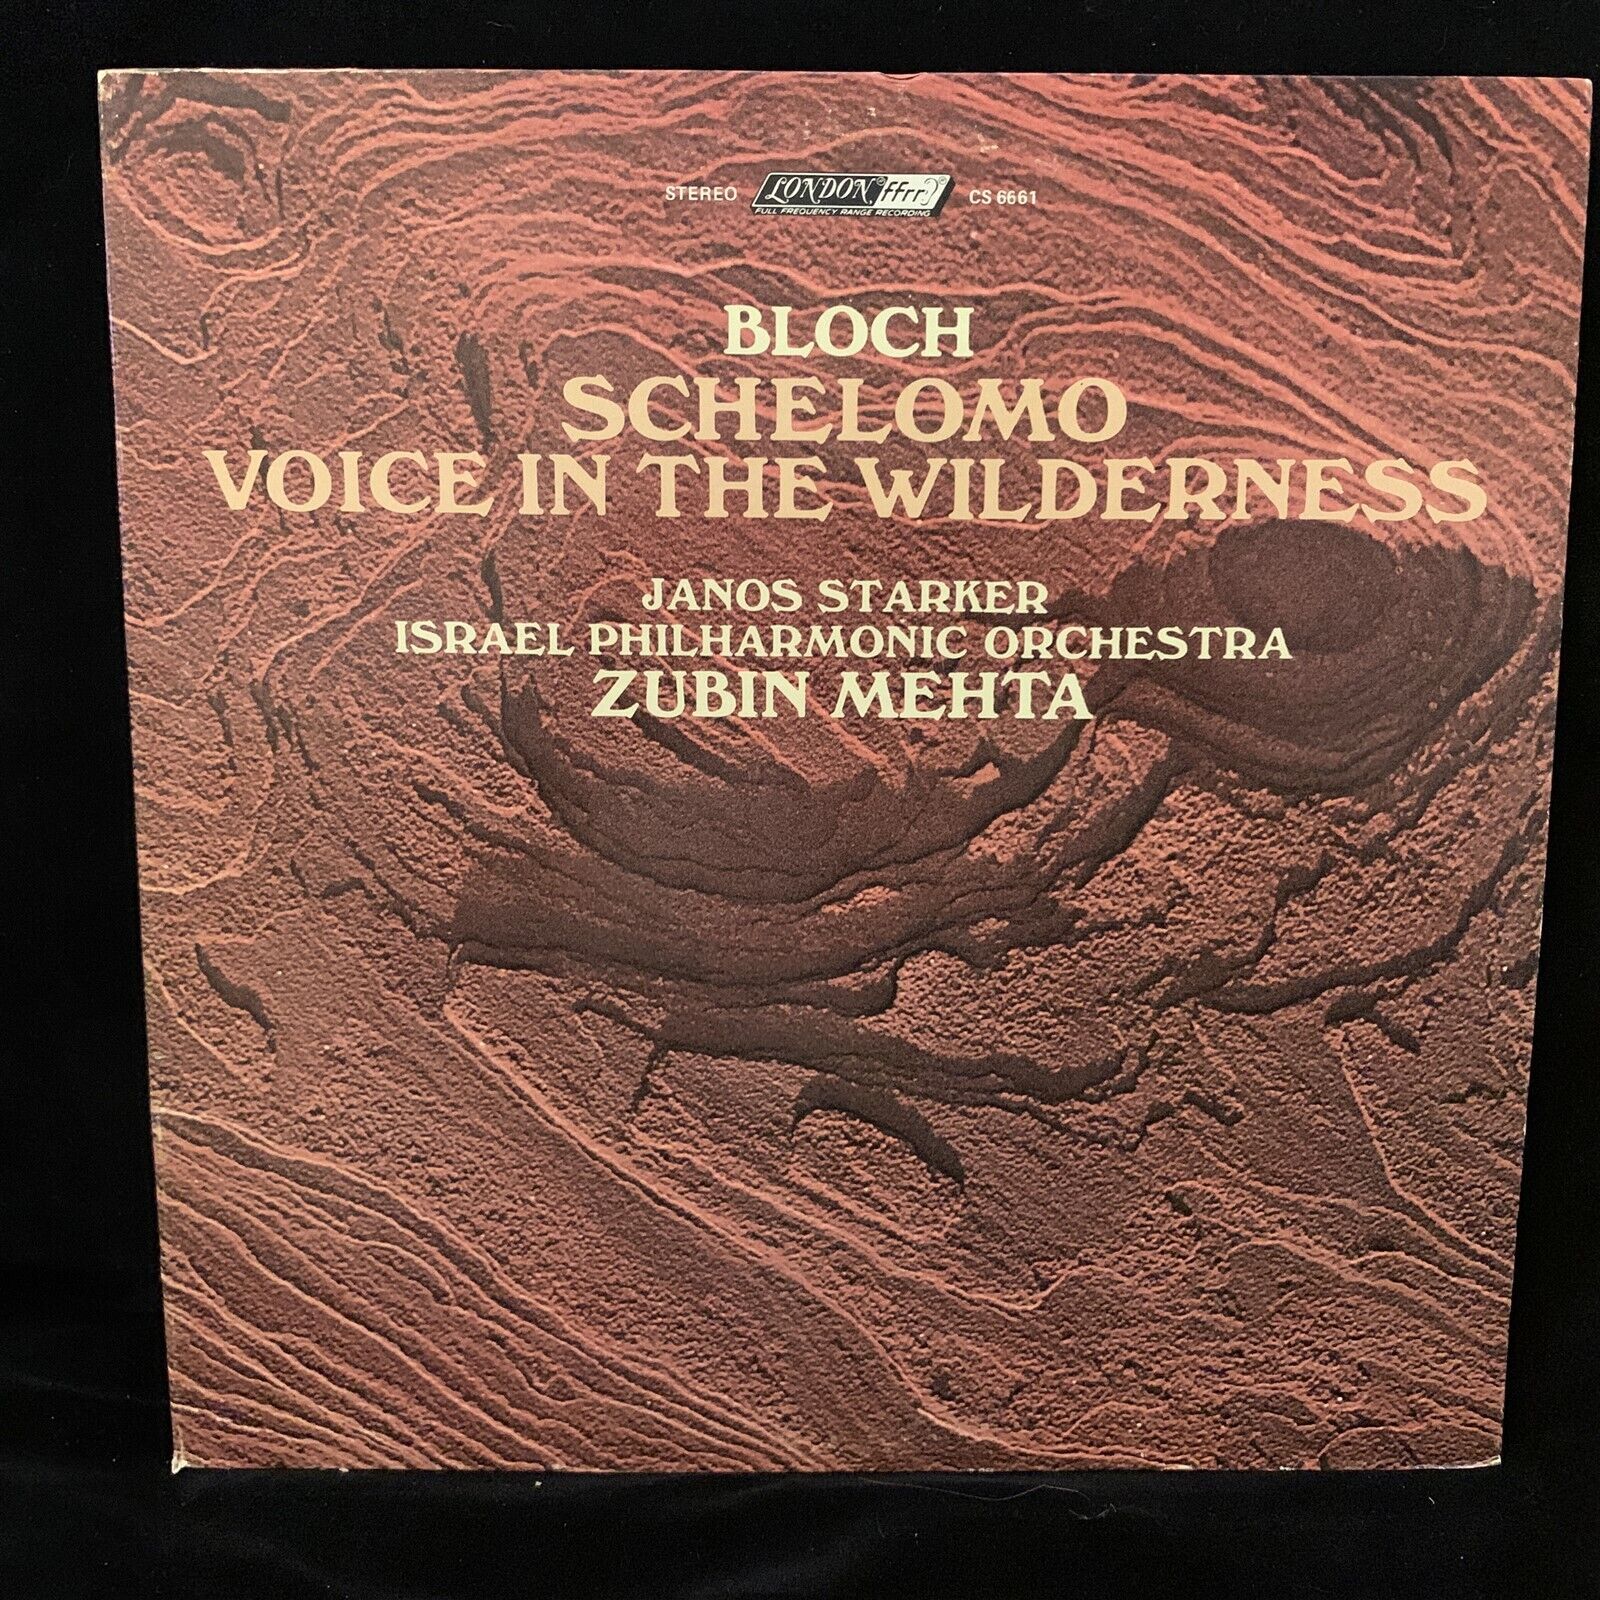 JANOS STARKER cello - BLOCH Schelomo, Voice in Wilderness MEHTA - LONDON CS 6661